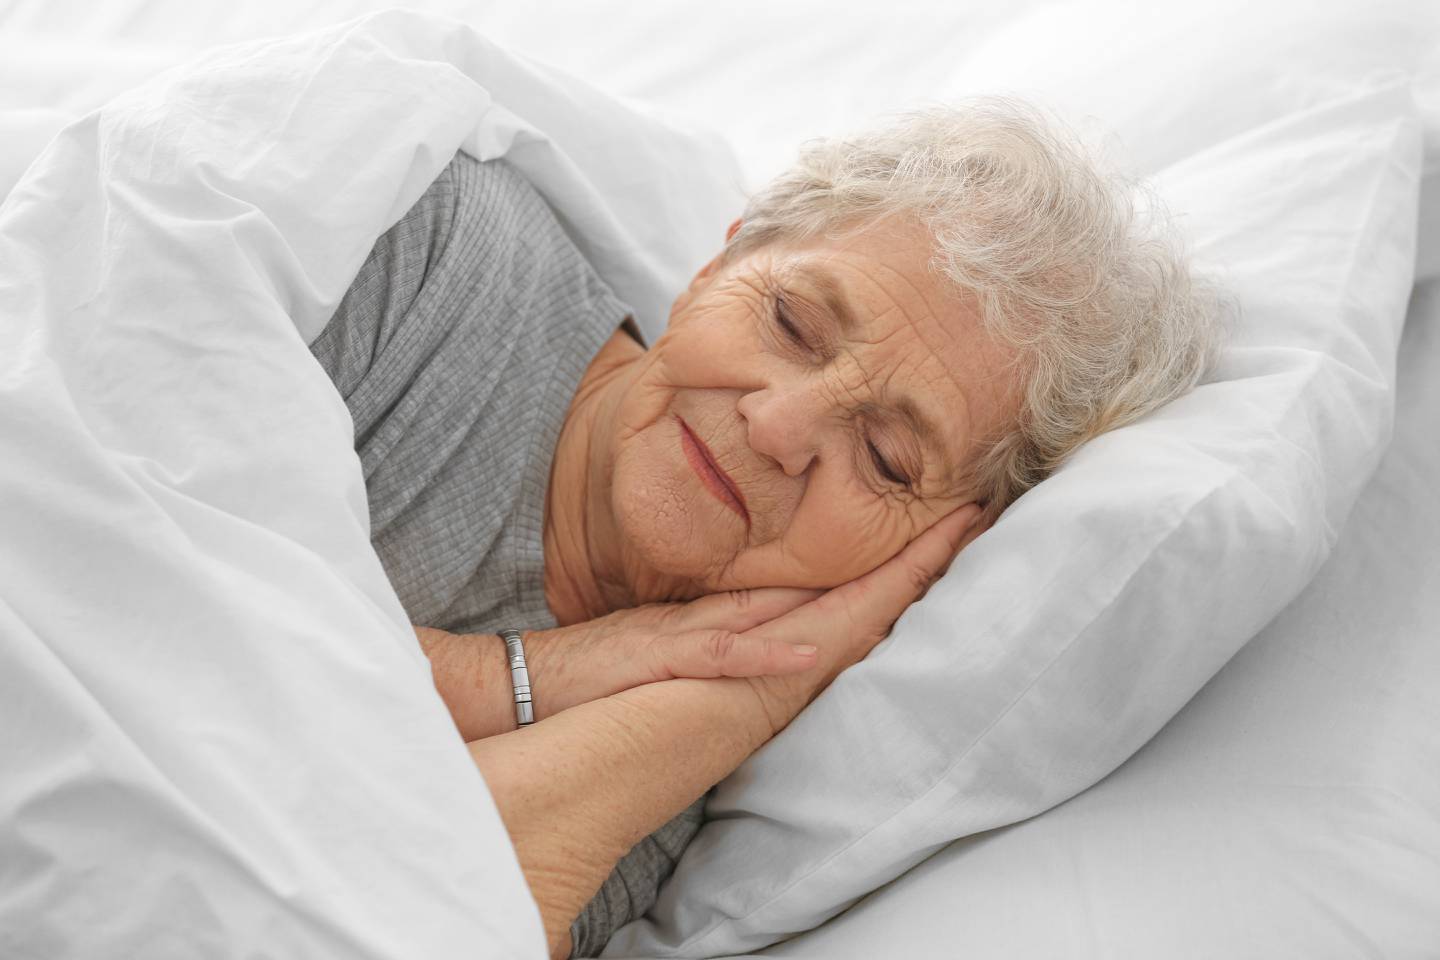 Sí es importante detectar si hay problemas de insomnio en el adulto mayor para garantizar la calidad del sueño.

Fotografía: Shutterstock